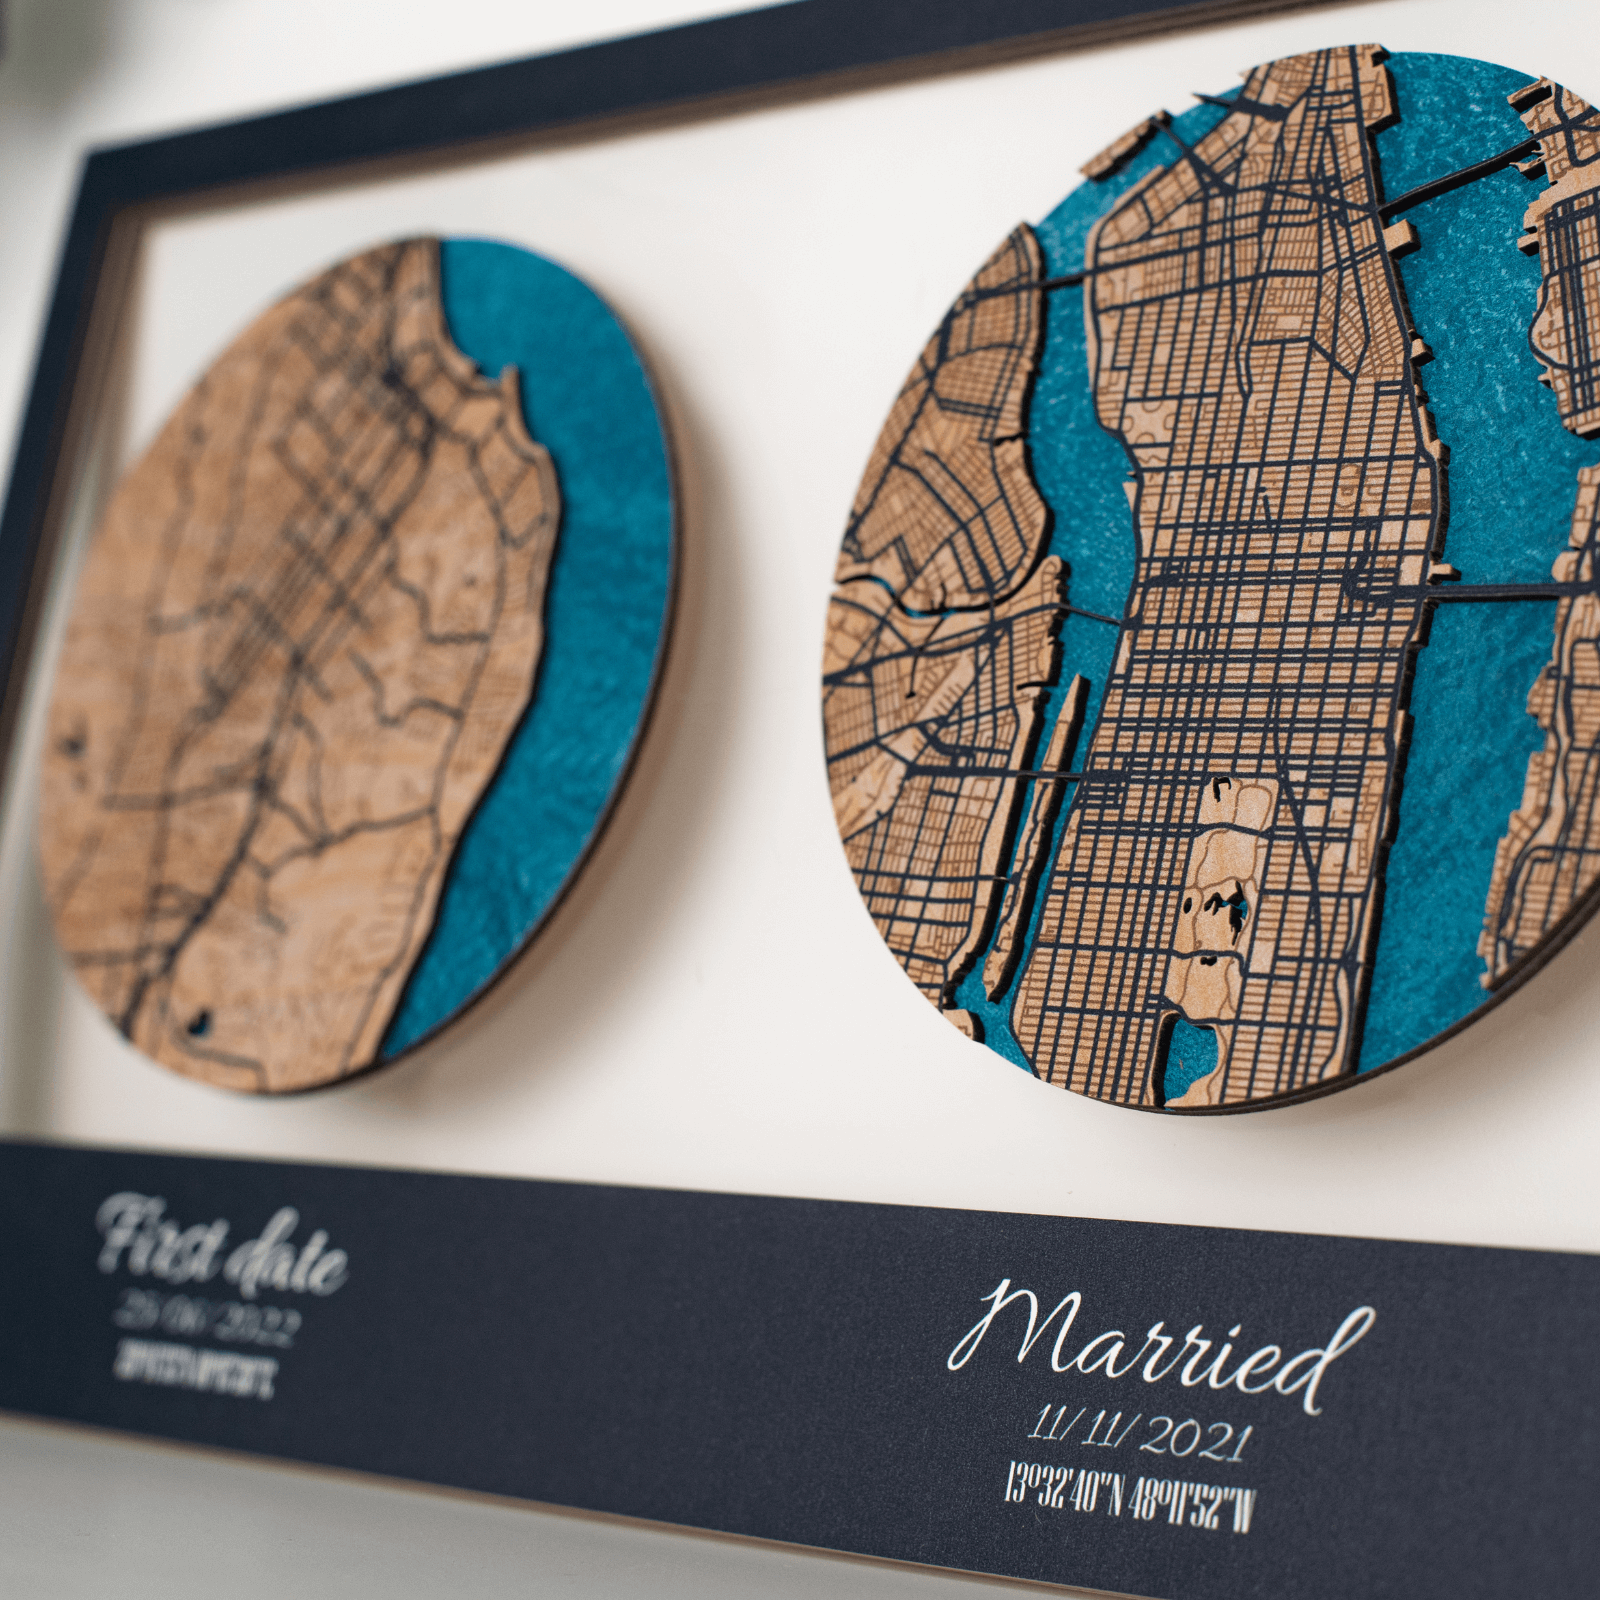 acrylic-based city map